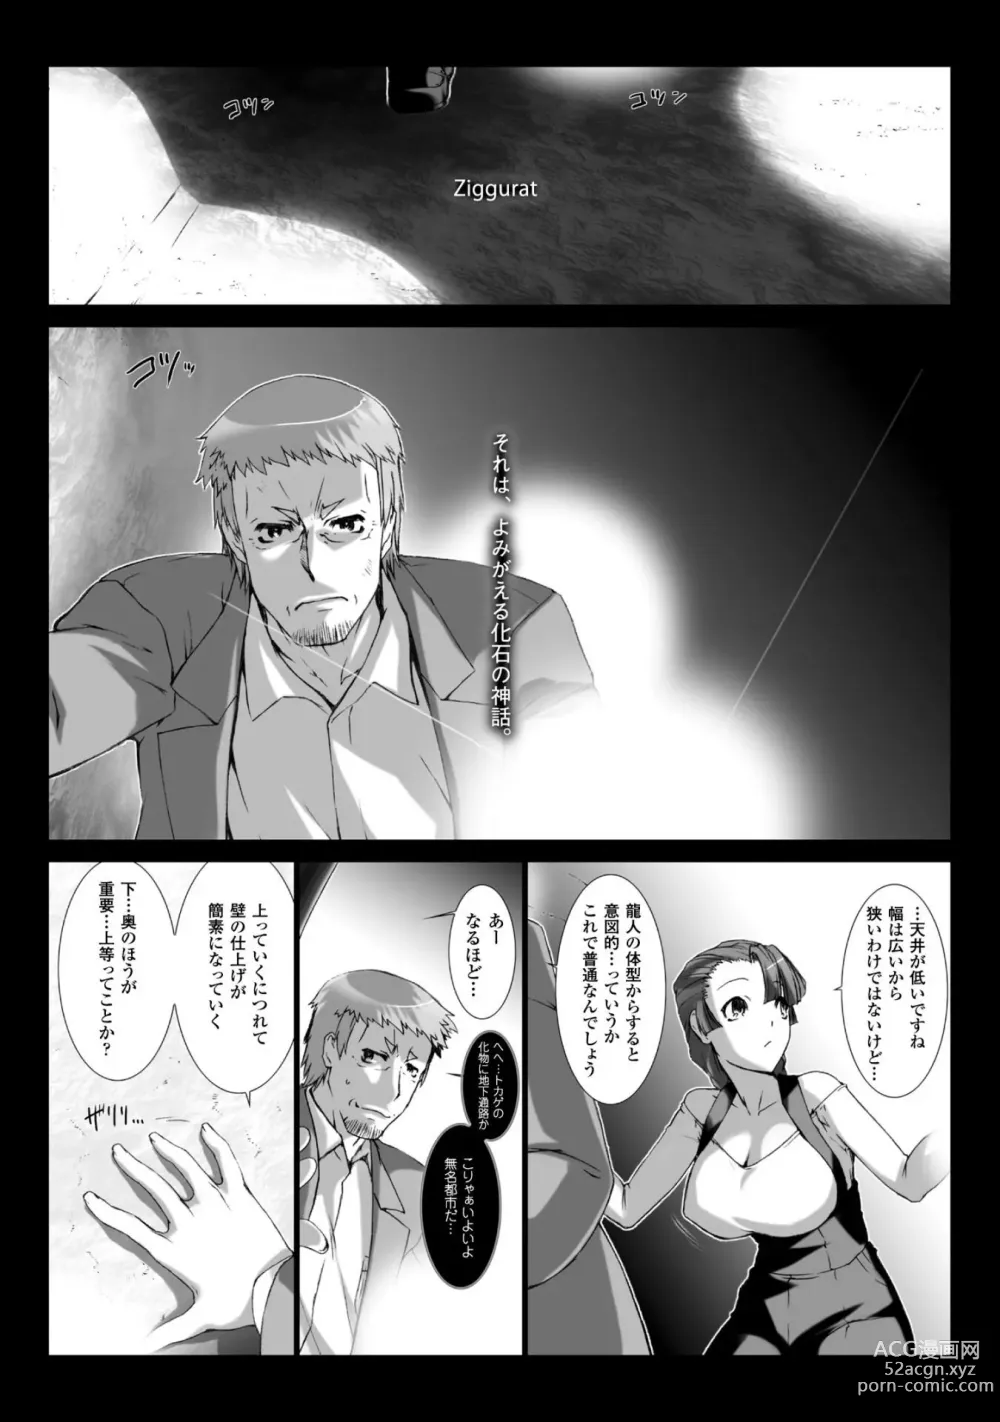 Page 12 of manga Ziggurat 6